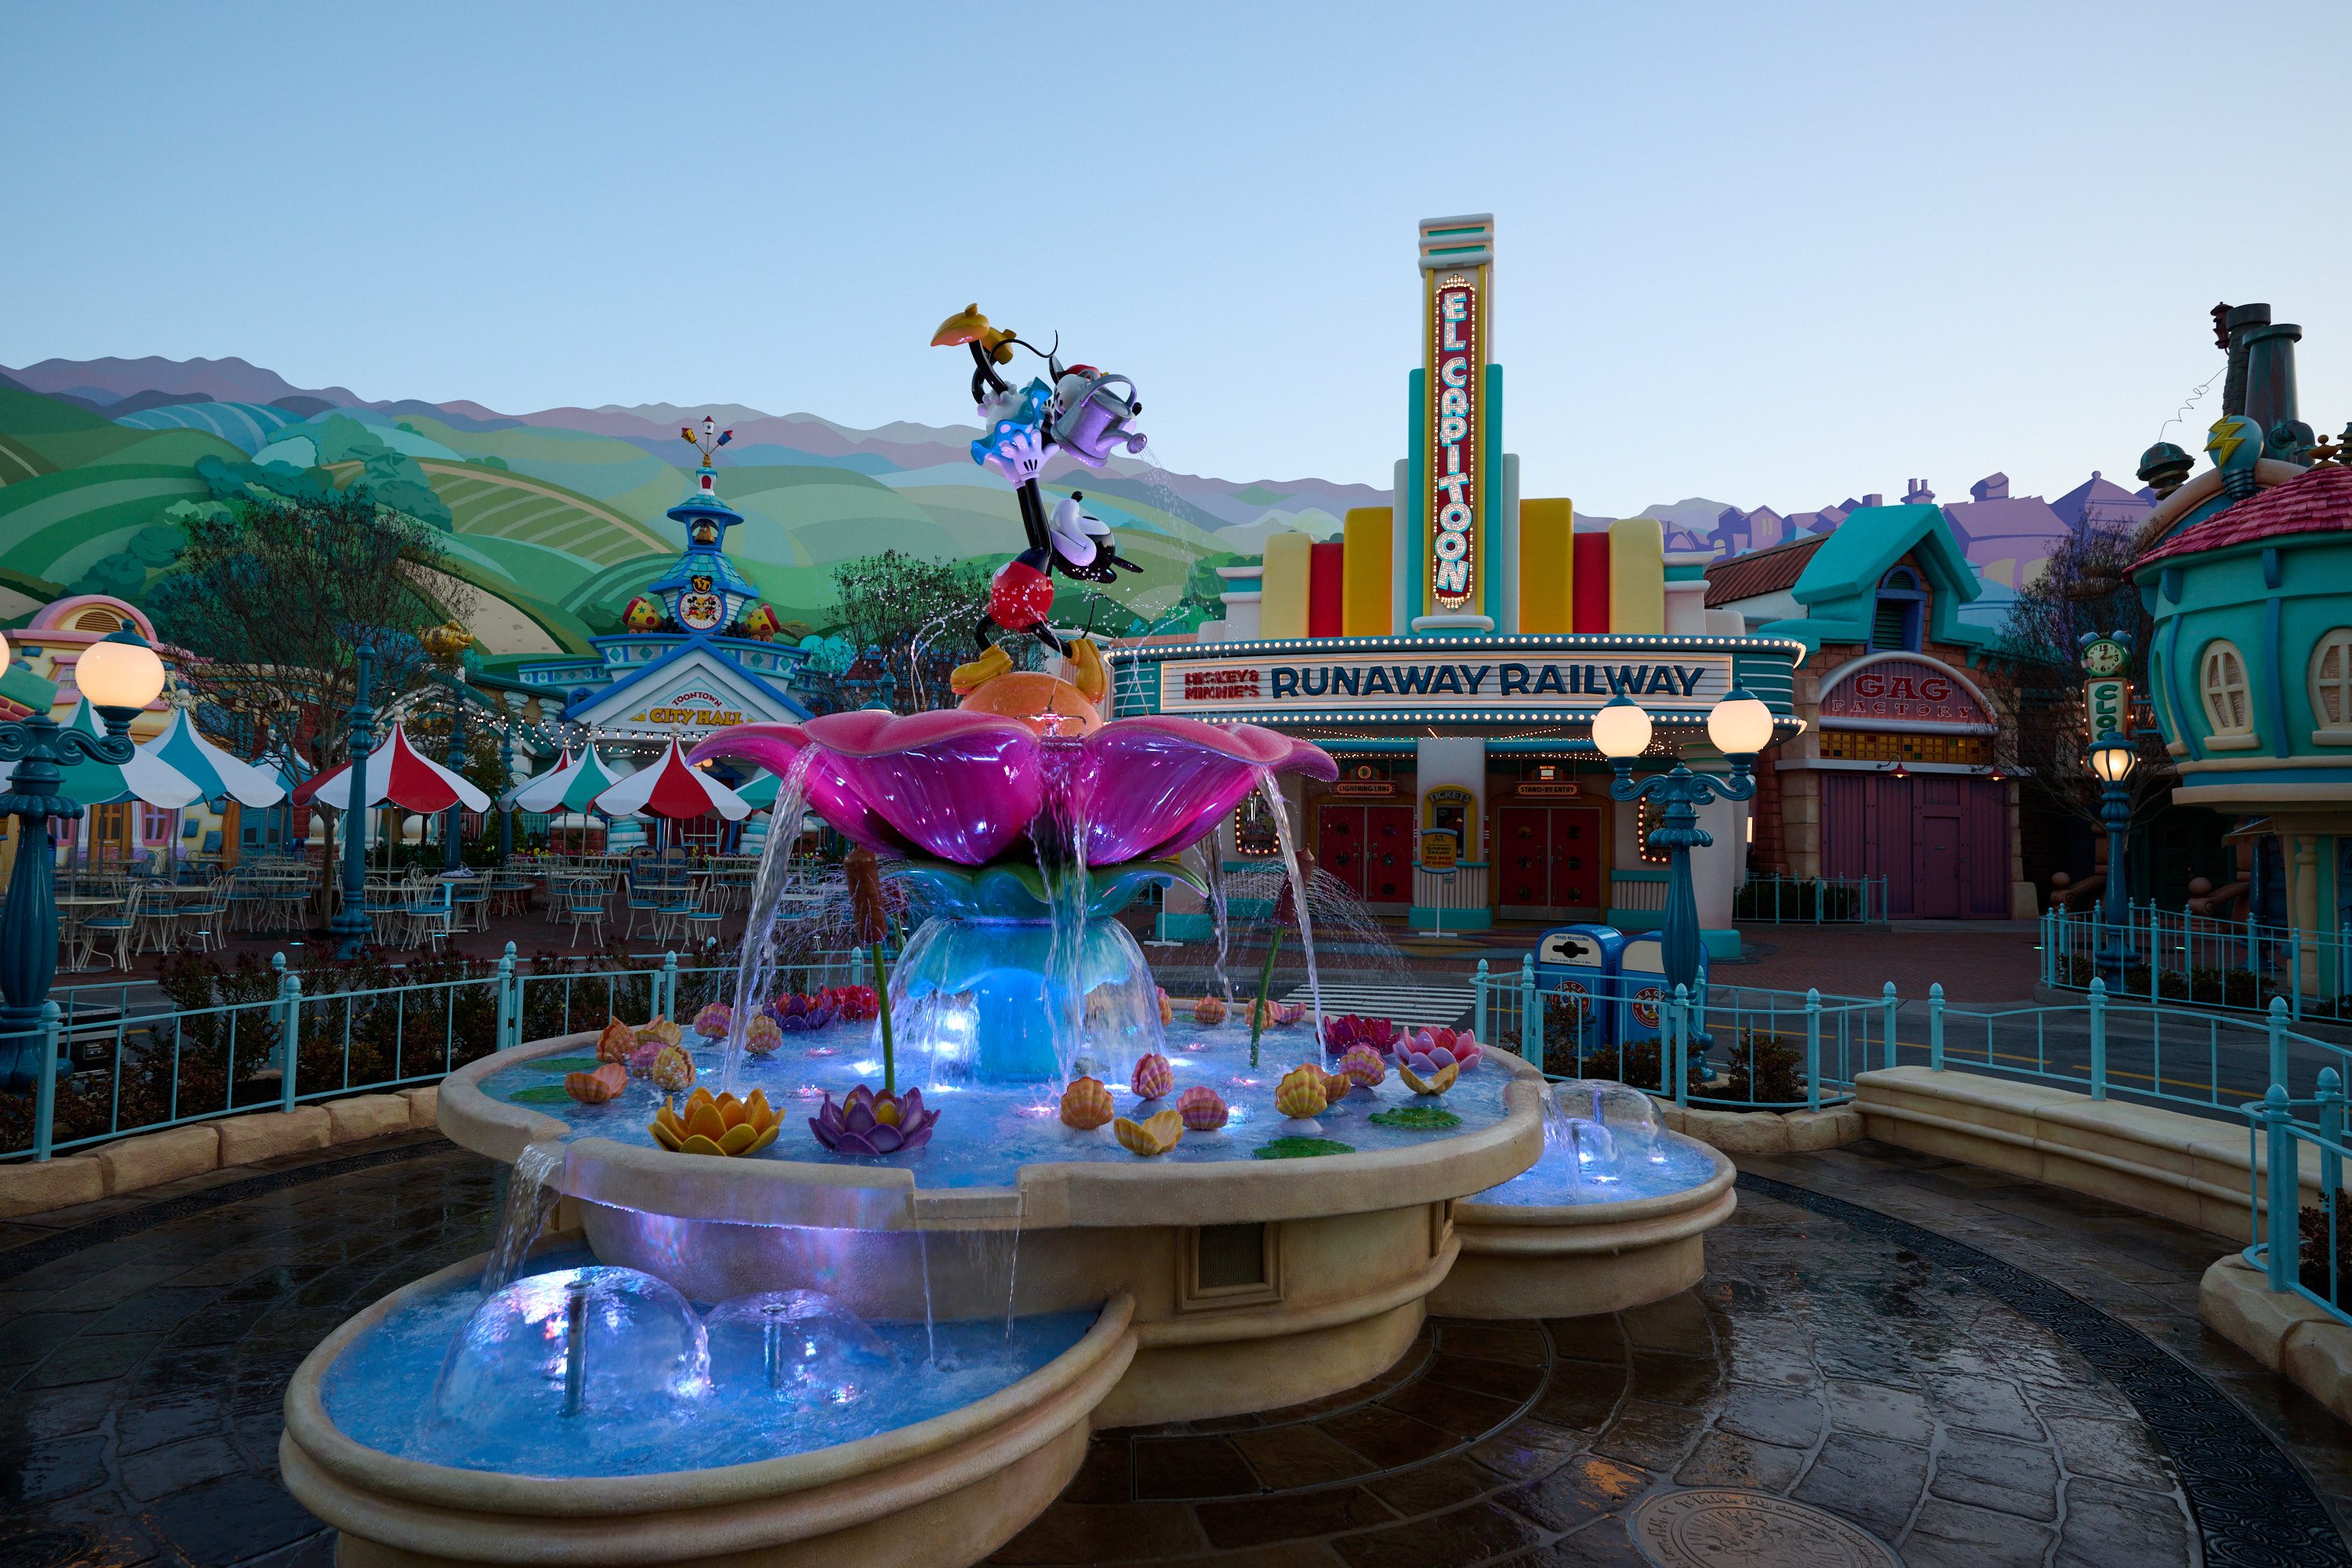 Mickeys Toontown at Disneyland Park – Mickeys Fountain in CenTOONial Park